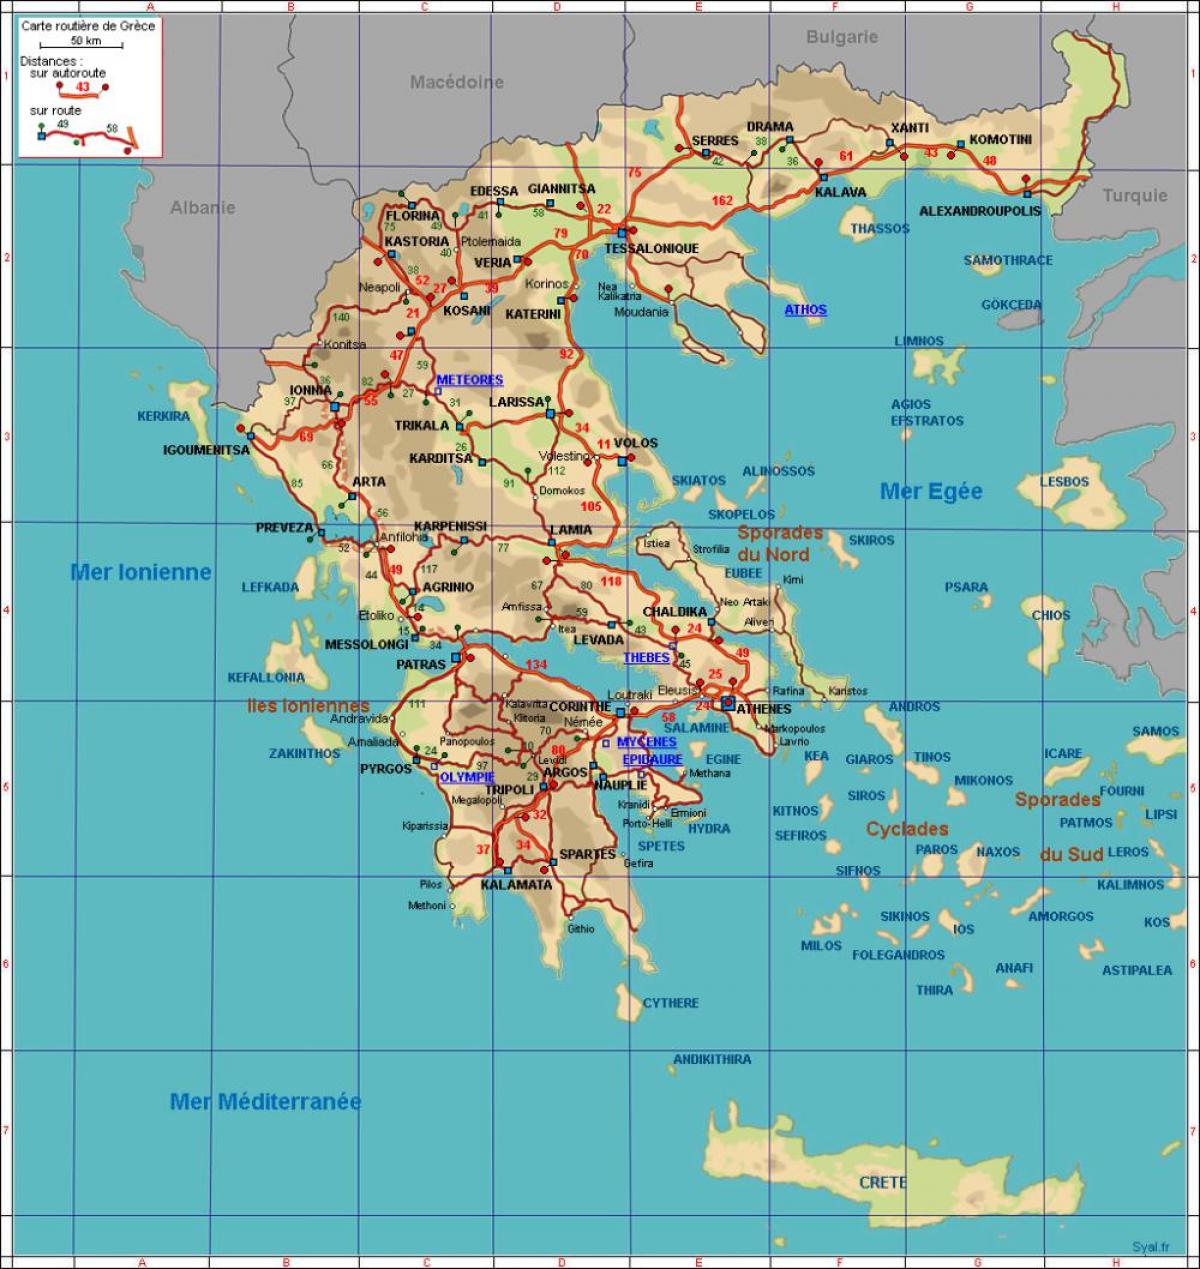 Autobahnkarte von Griechenland